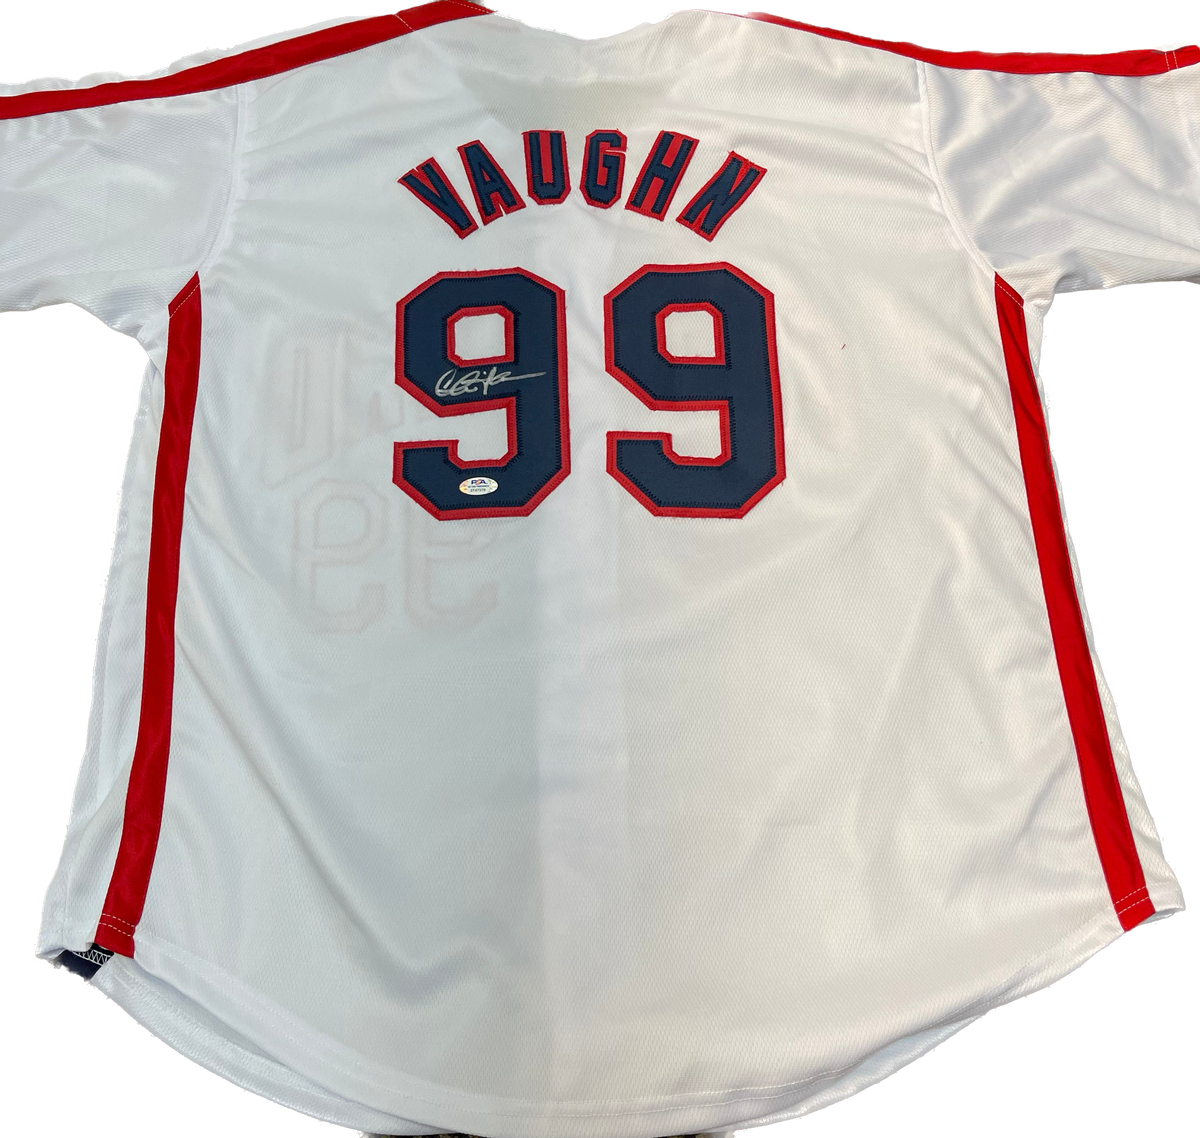 Charlie Sheen Vaughn Signed Major League Blue Baseball Jersey (JSA) — RSA